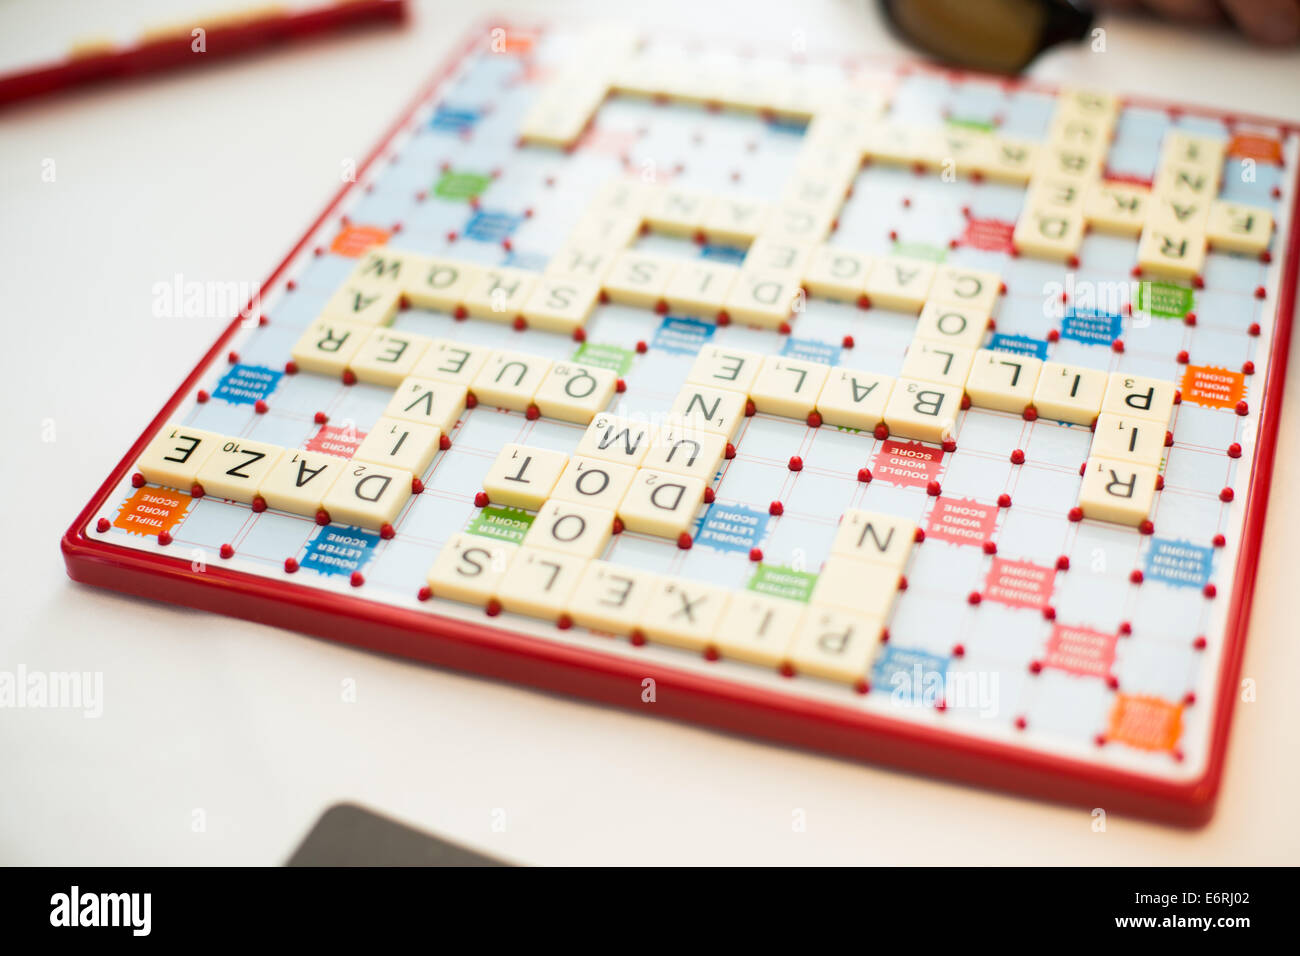 Ein Bild von einem Scrabble-Brett fast voll von Wörtern Stockfoto